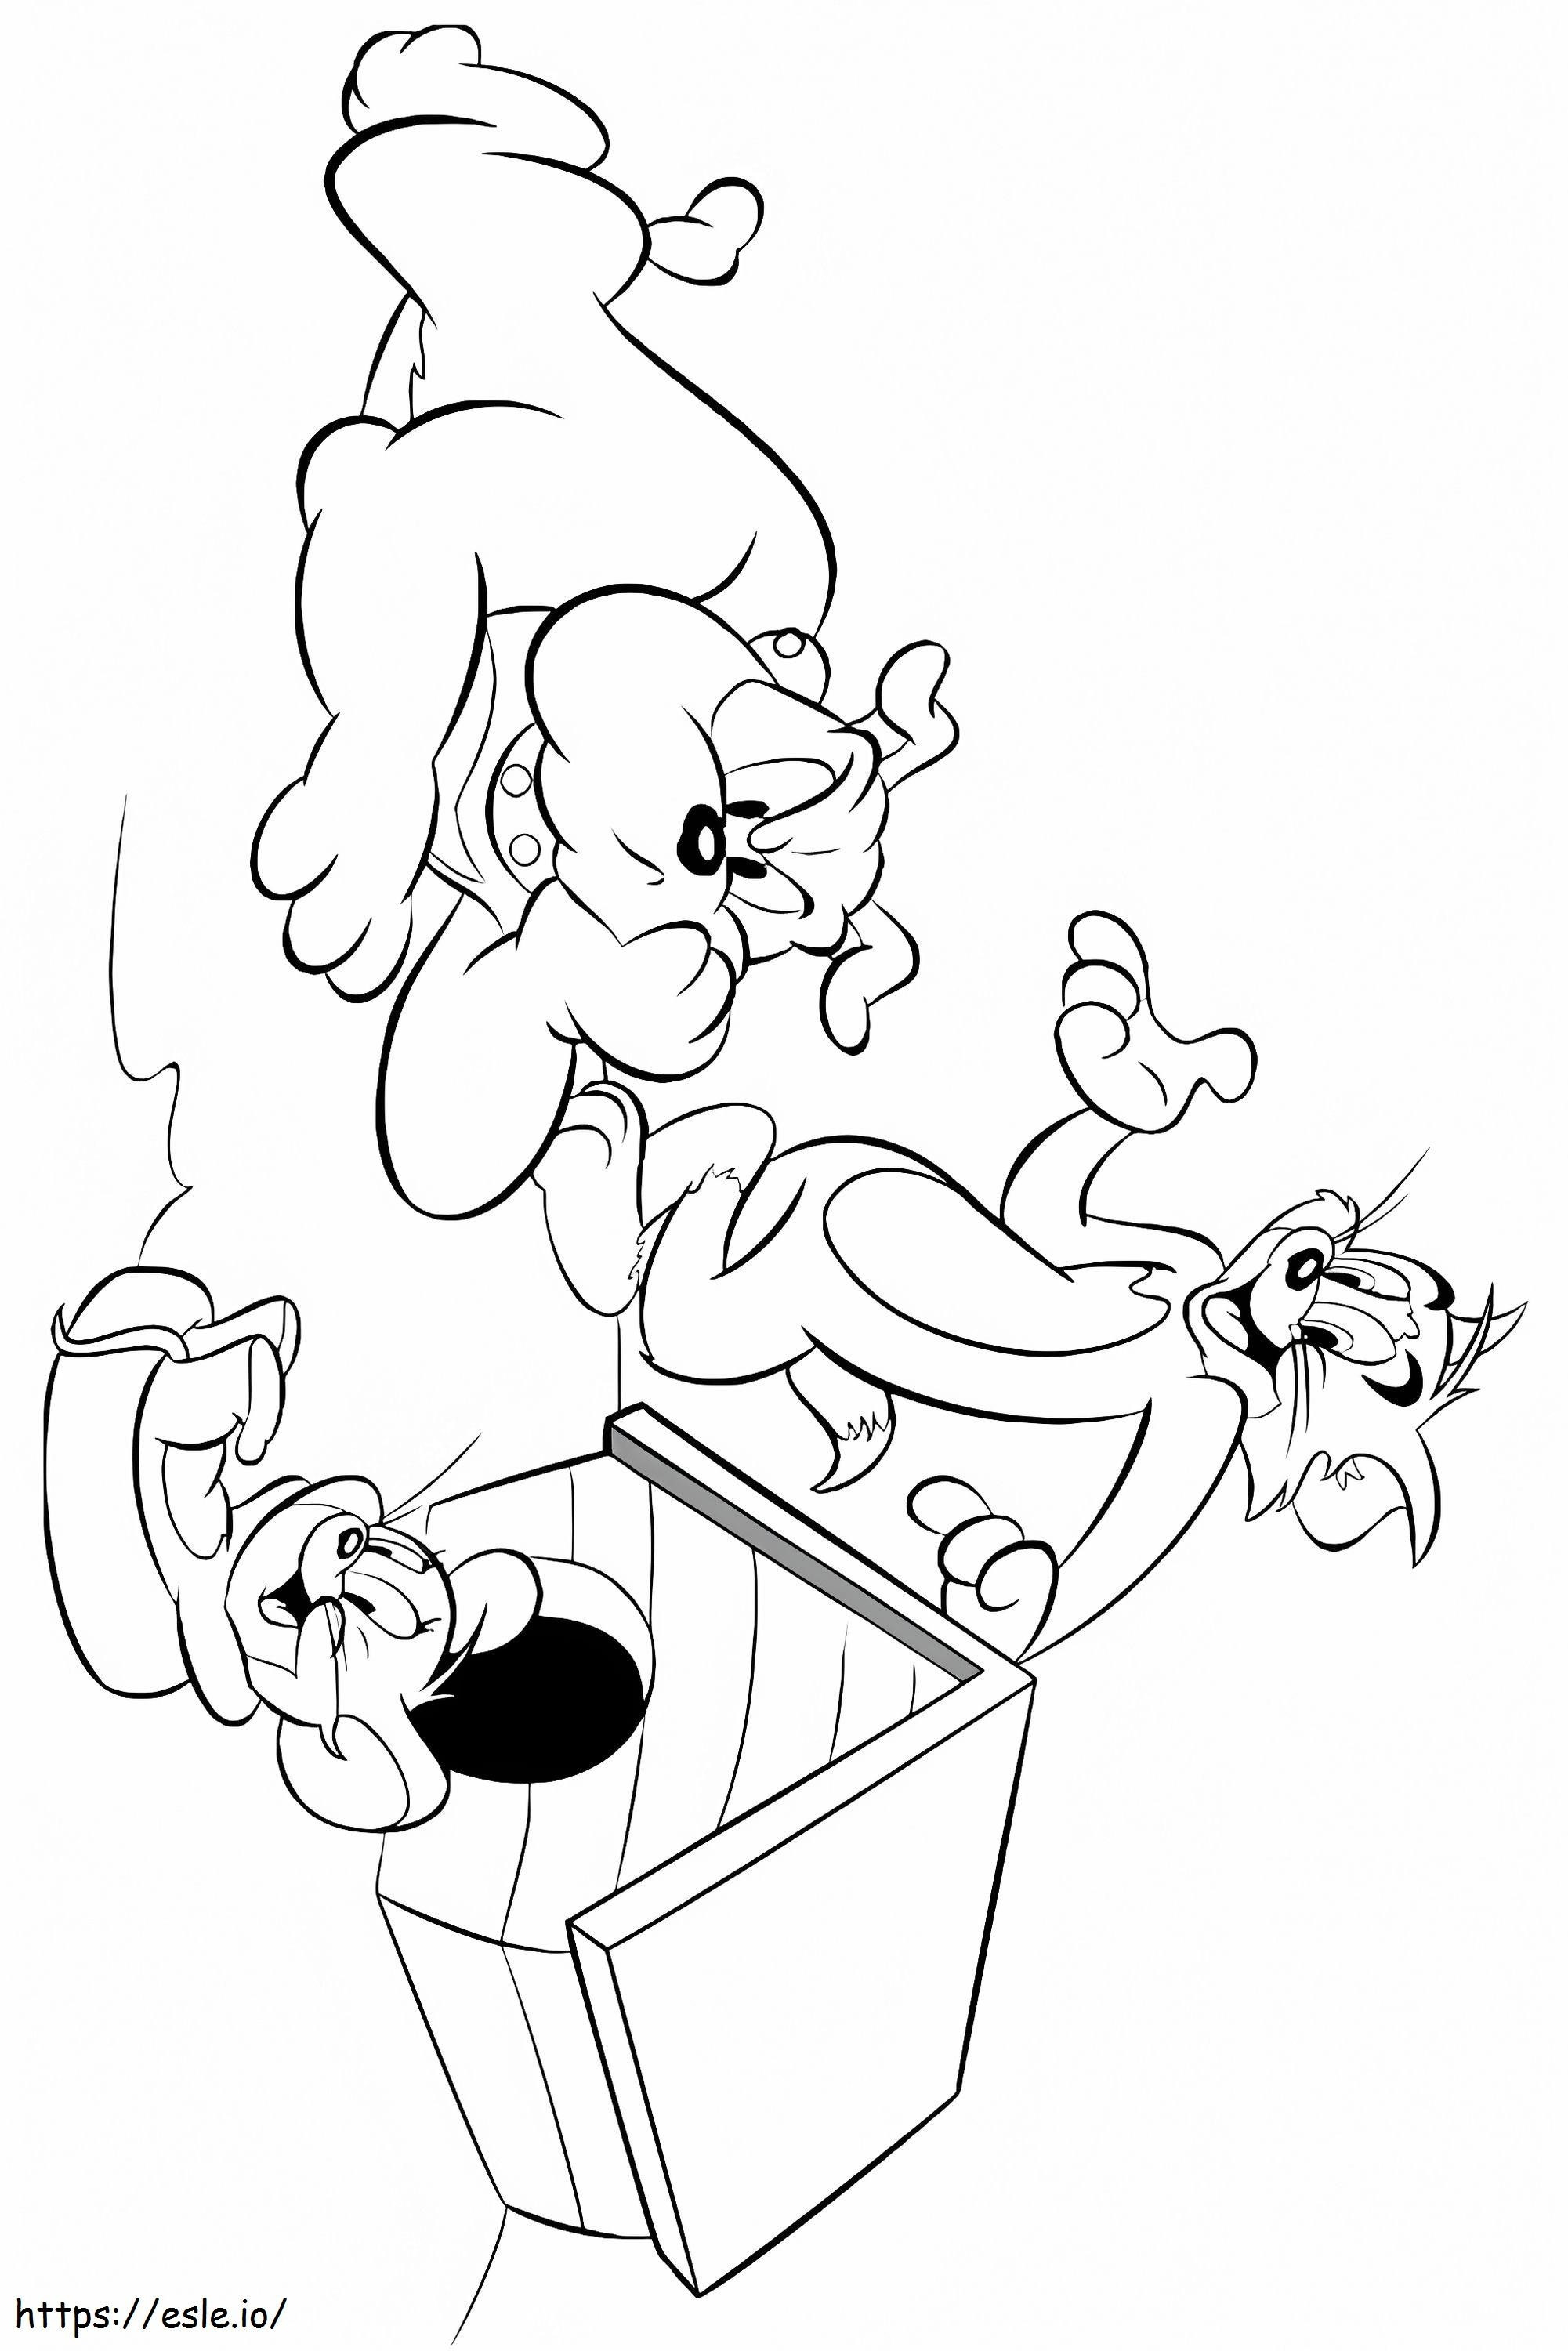  Tom e Jerry Personagens A4 para colorir